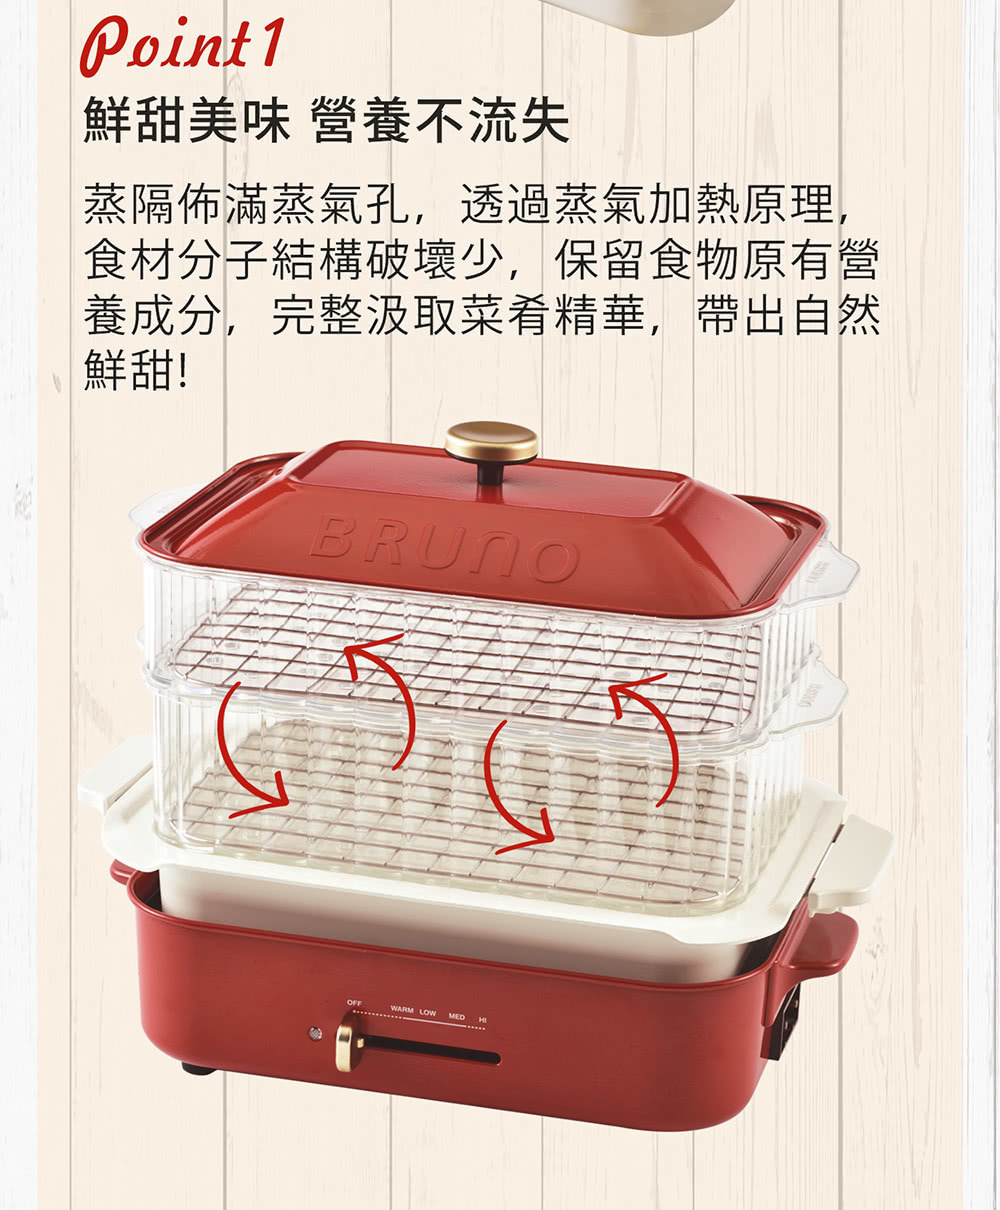 BRUNO 多功能電烤盤 BOE021 雙層料理蒸隔使用蒸氣加熱原理，食物結構破壞少，保留食物營養、精華。